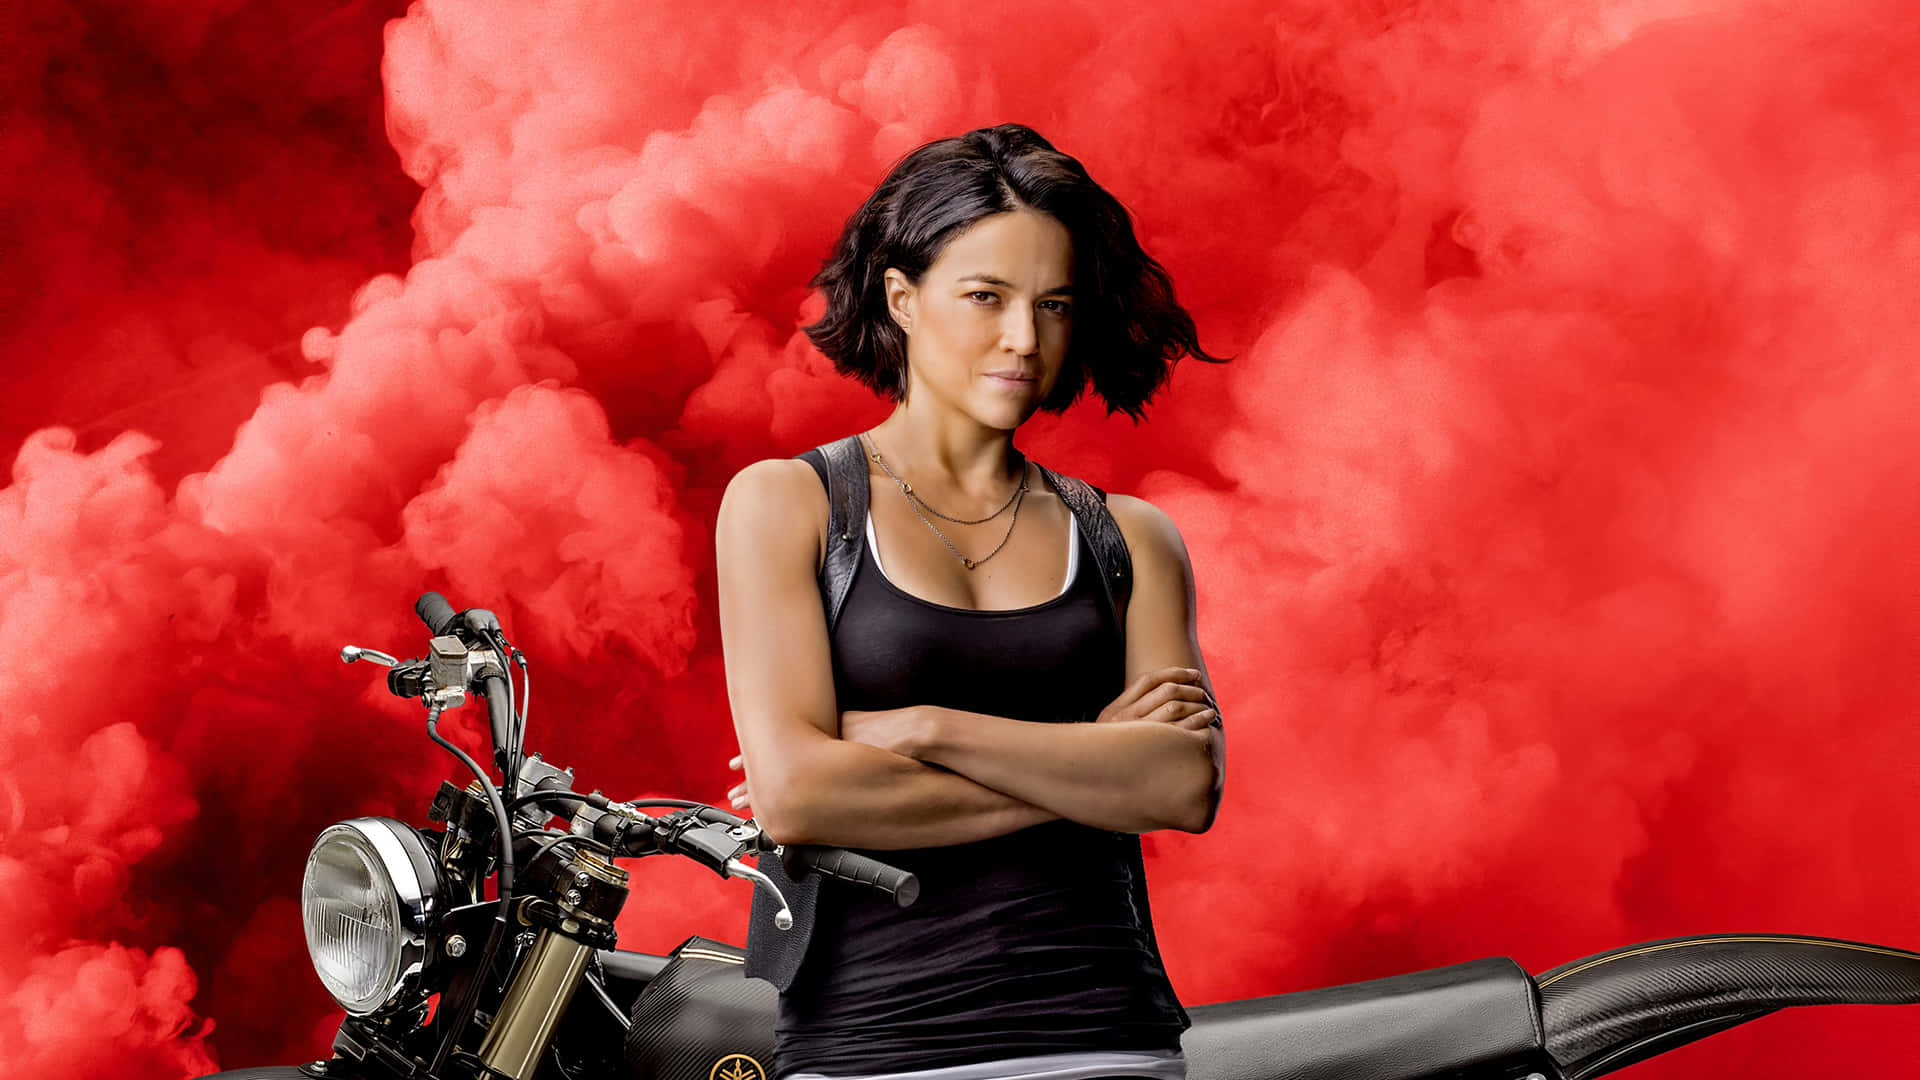 En kvinde stående på en motorcykel med røg som steger ud fra den. Wallpaper